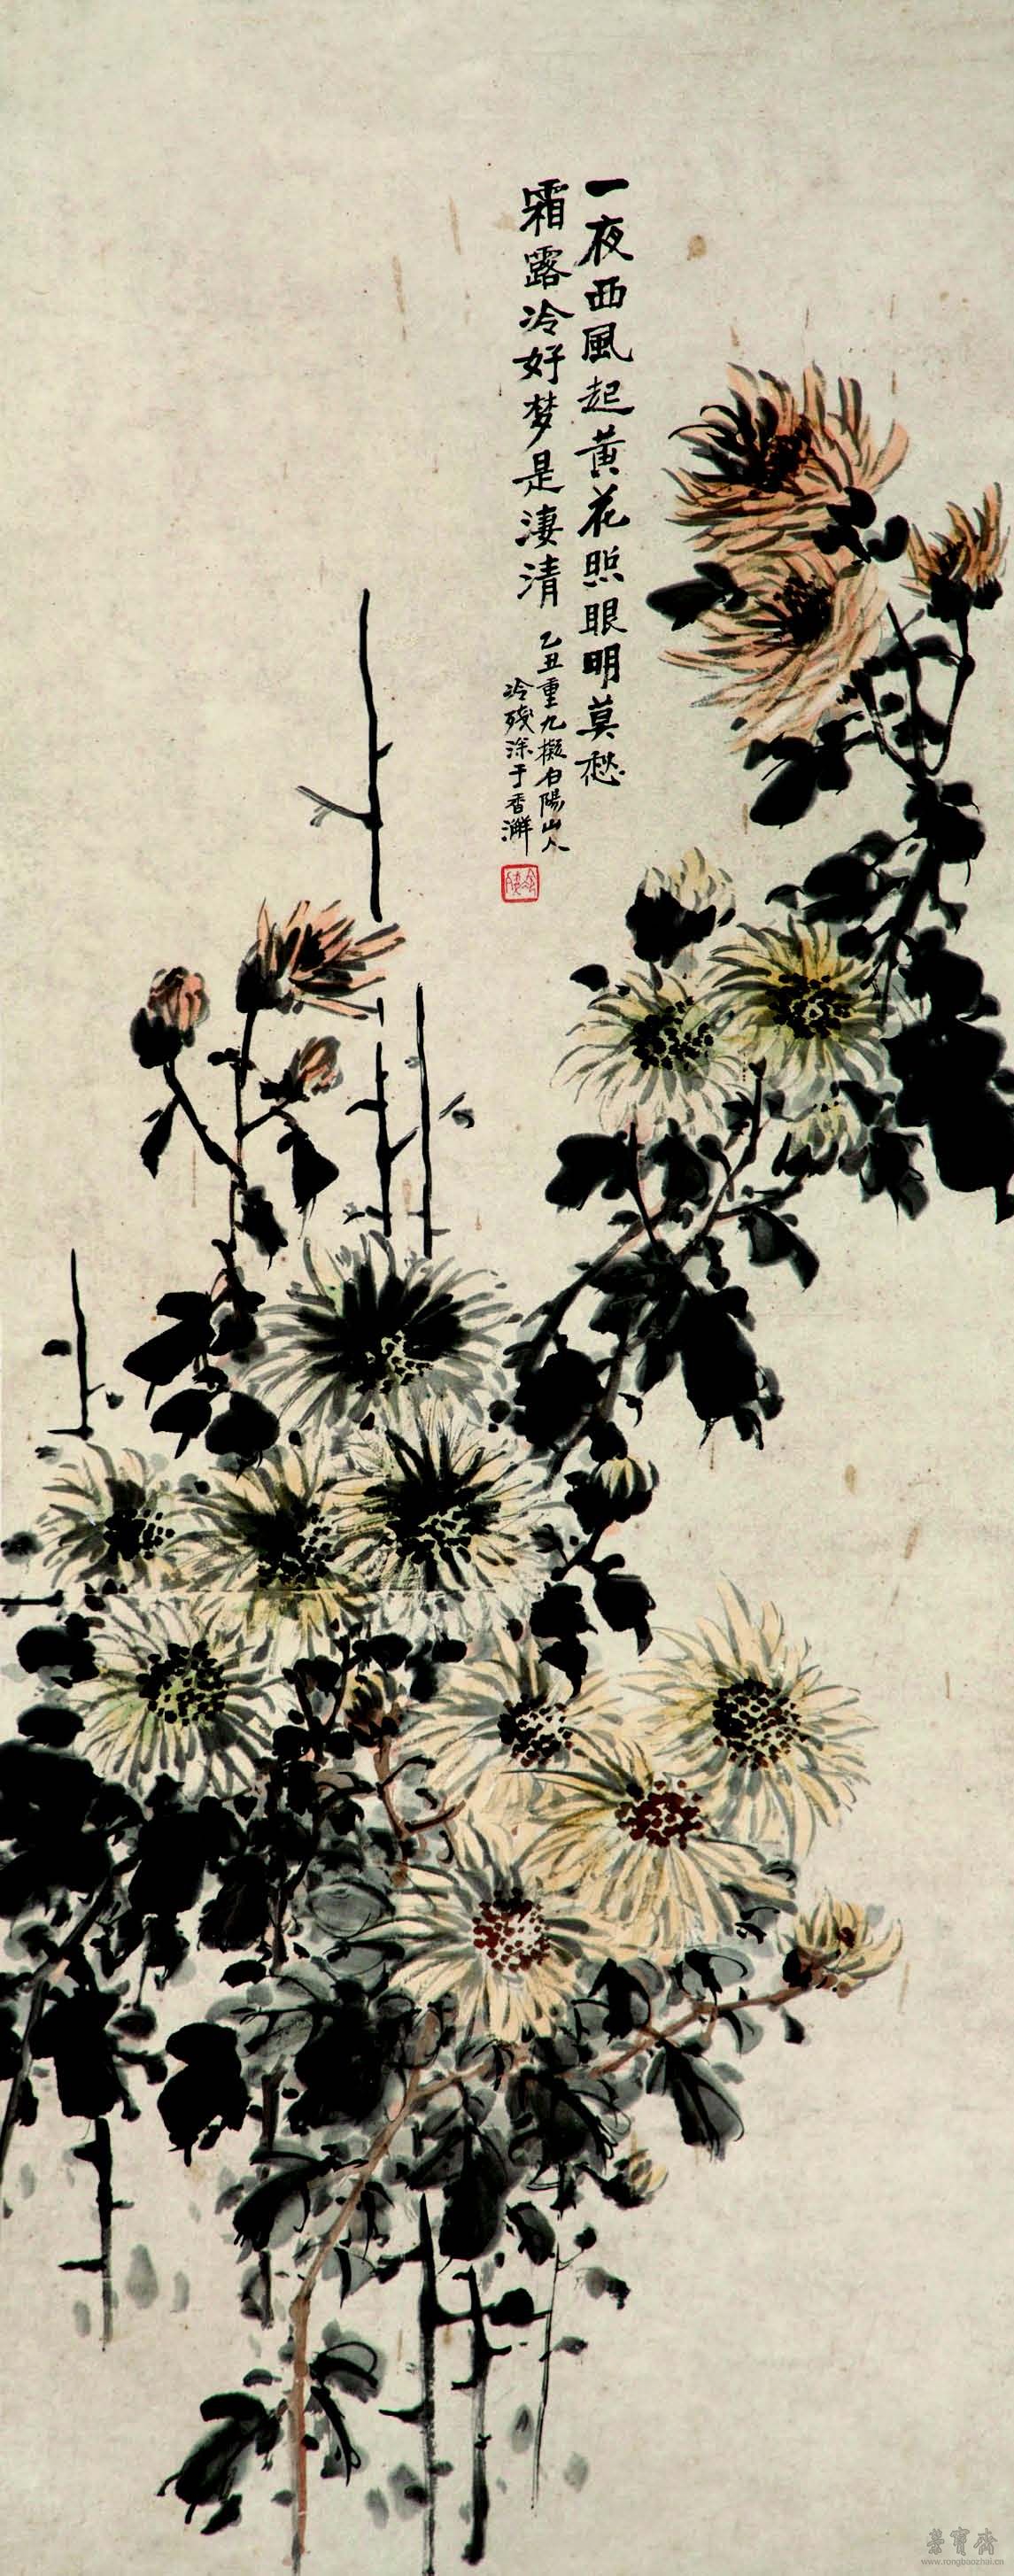 潘达微 菊花图 116cm×46cm 纸本设色 广东省博物馆藏